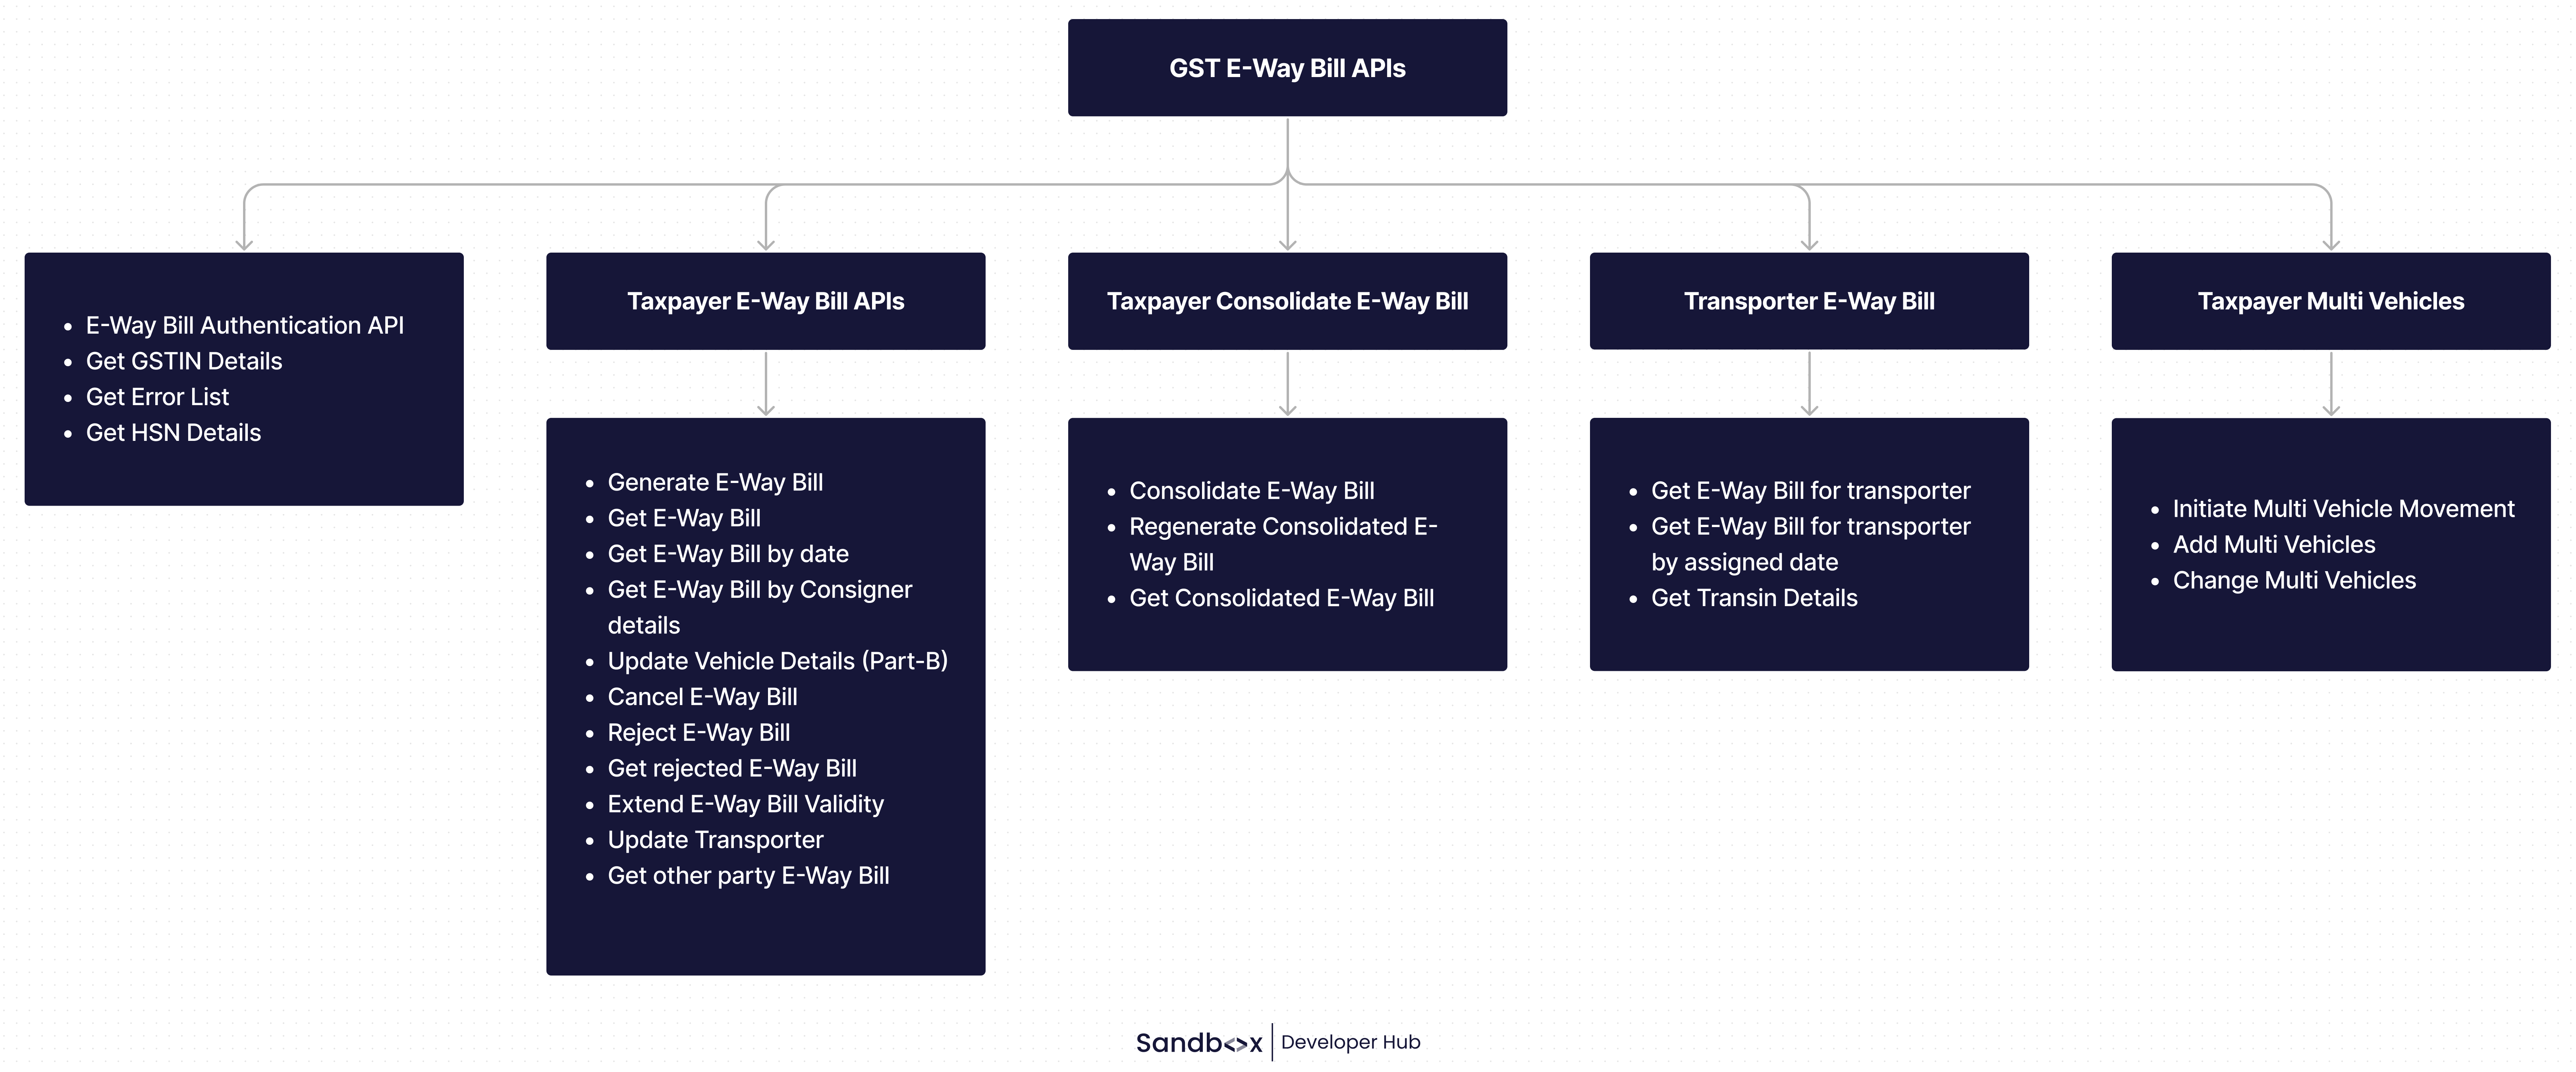 GST E-Way Bill APIs